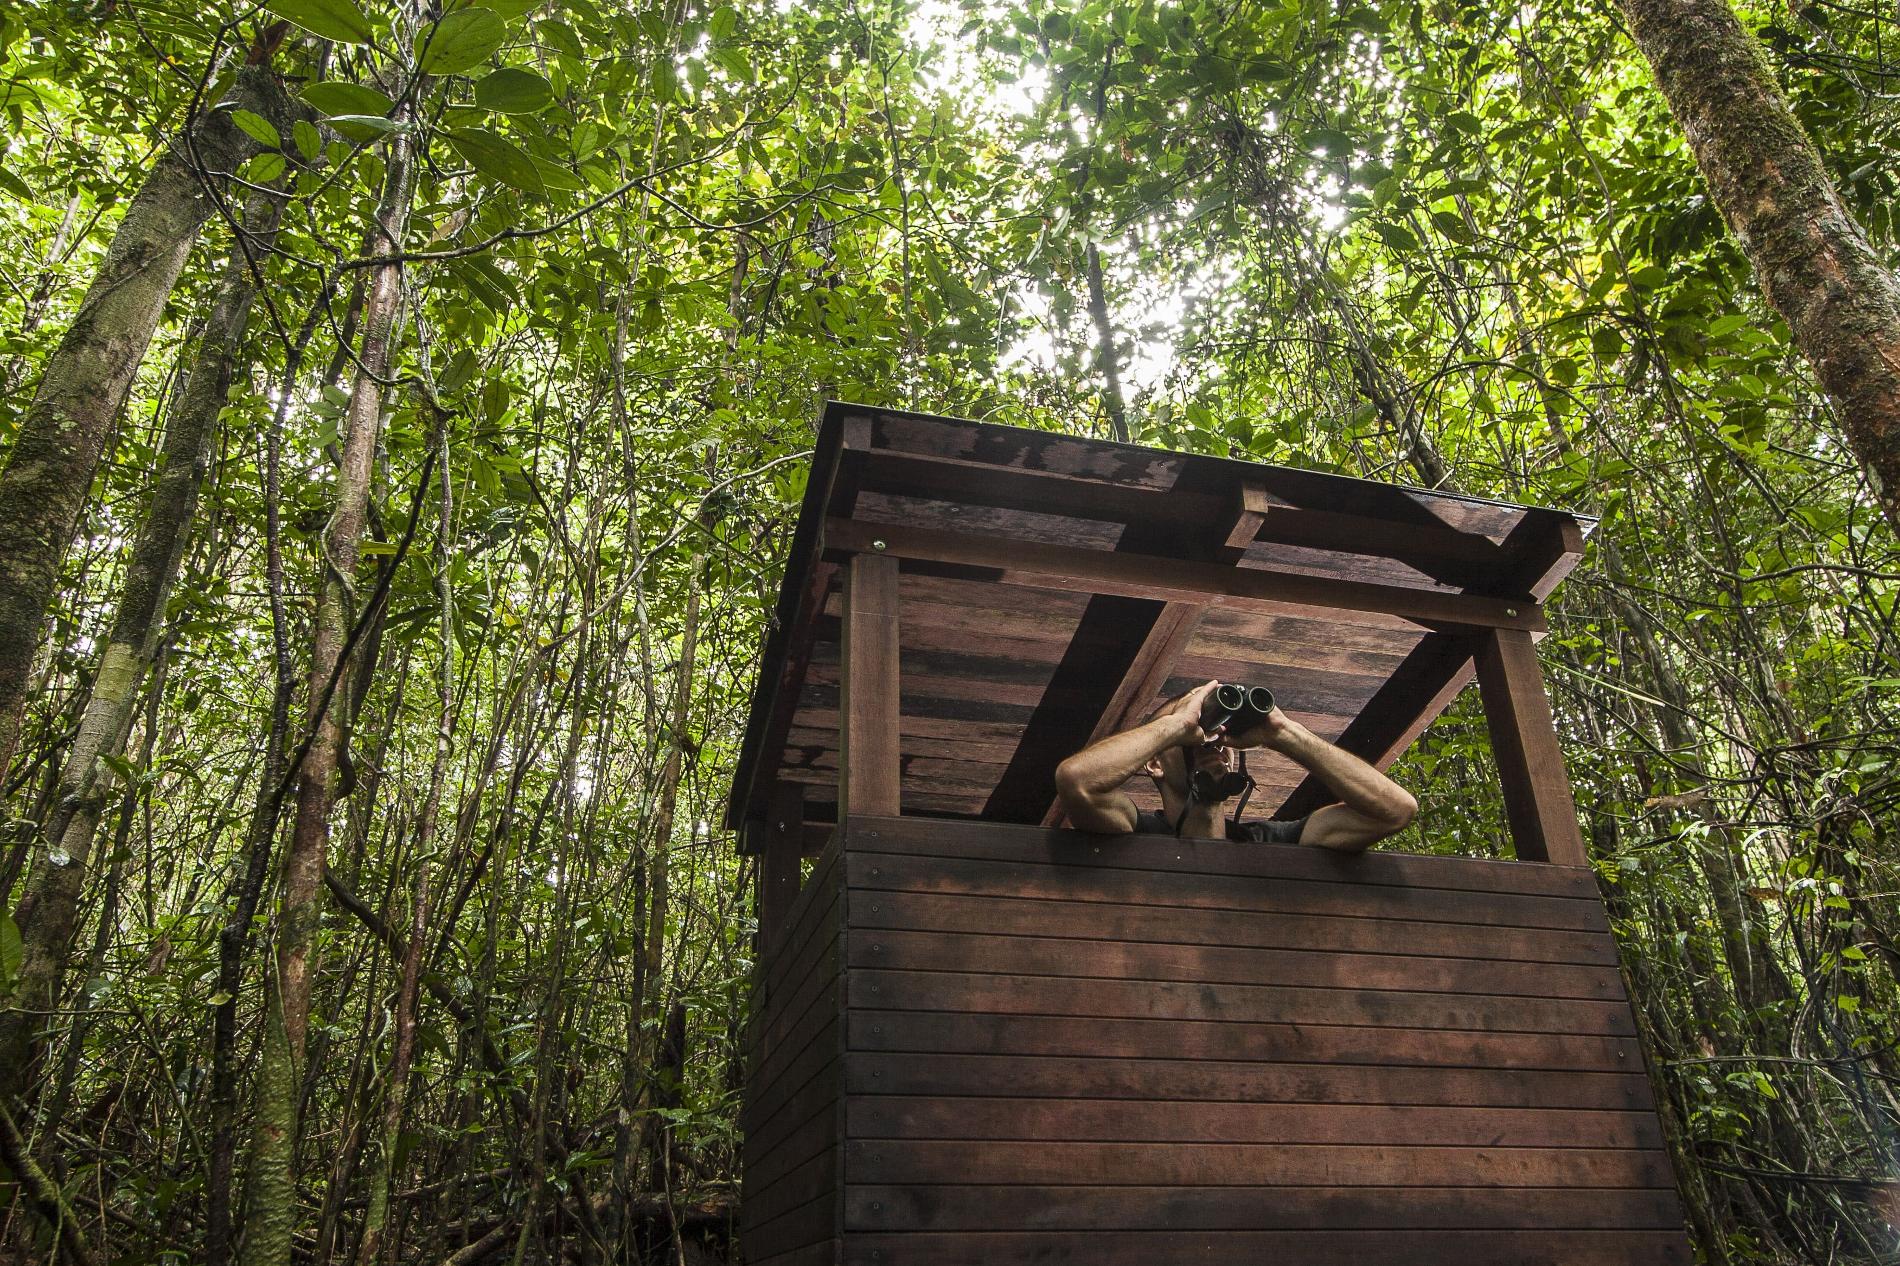  Observateur en forêt, Guyane © Pierre-Olivier Jay